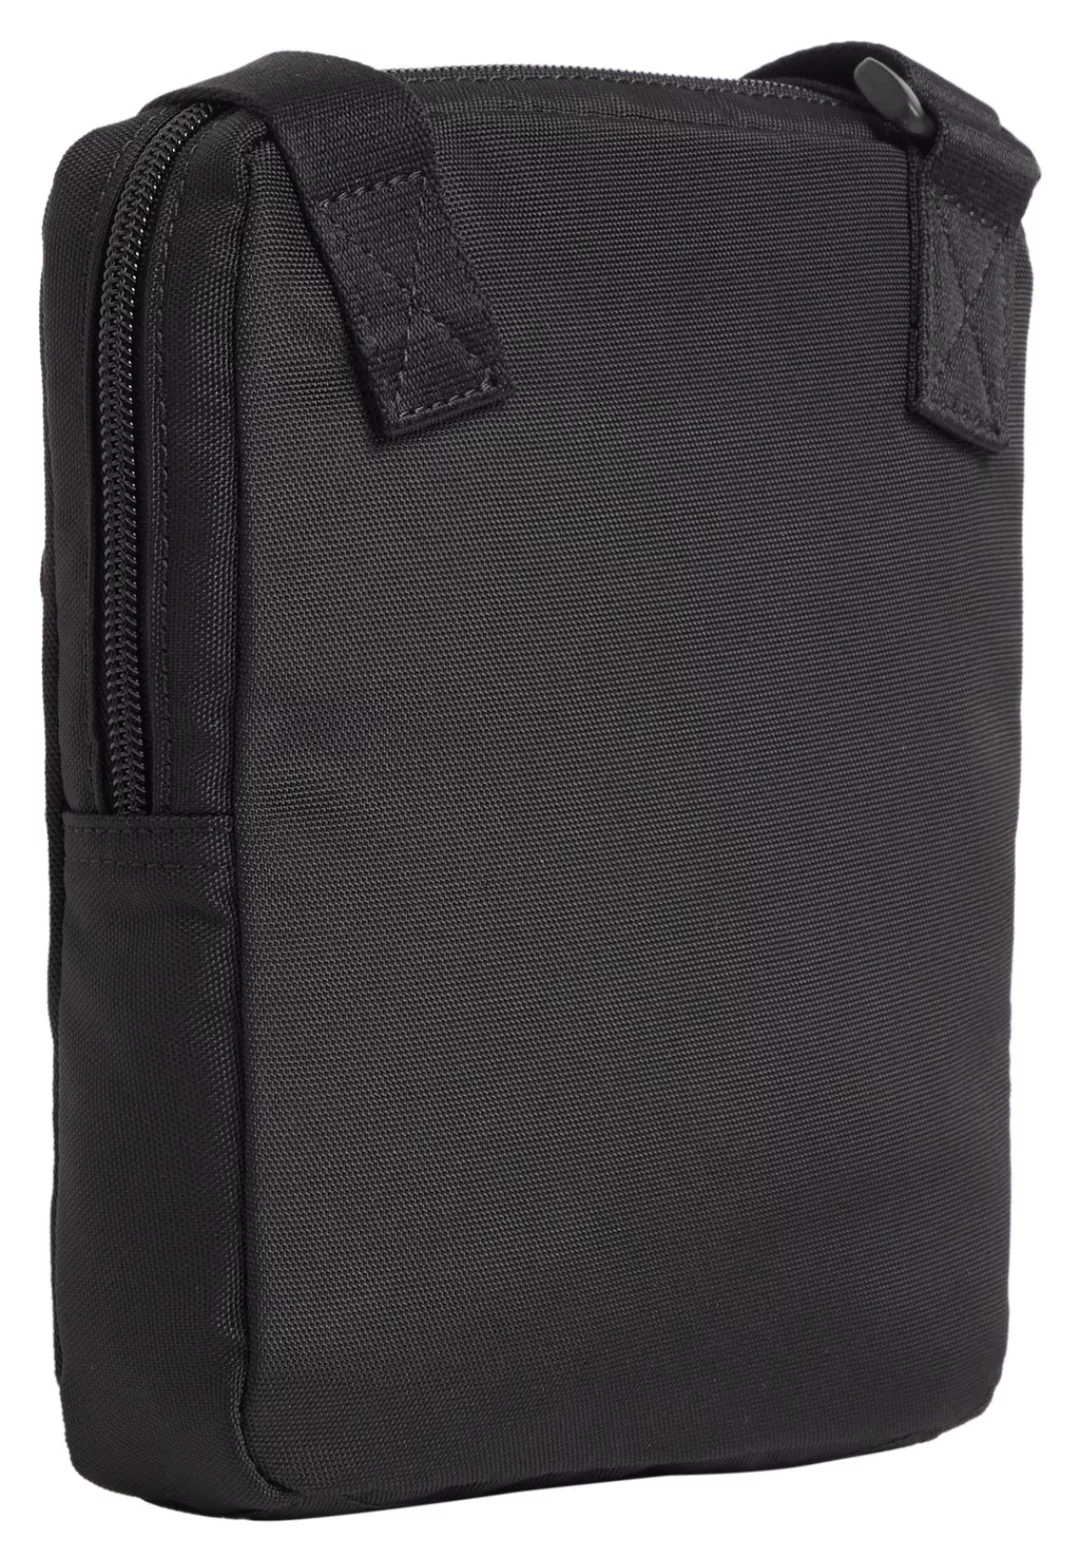 Calvin Klein Jeans Mini Bag "SPORT ESSENTIALS REPORTER18 NY" günstig online kaufen